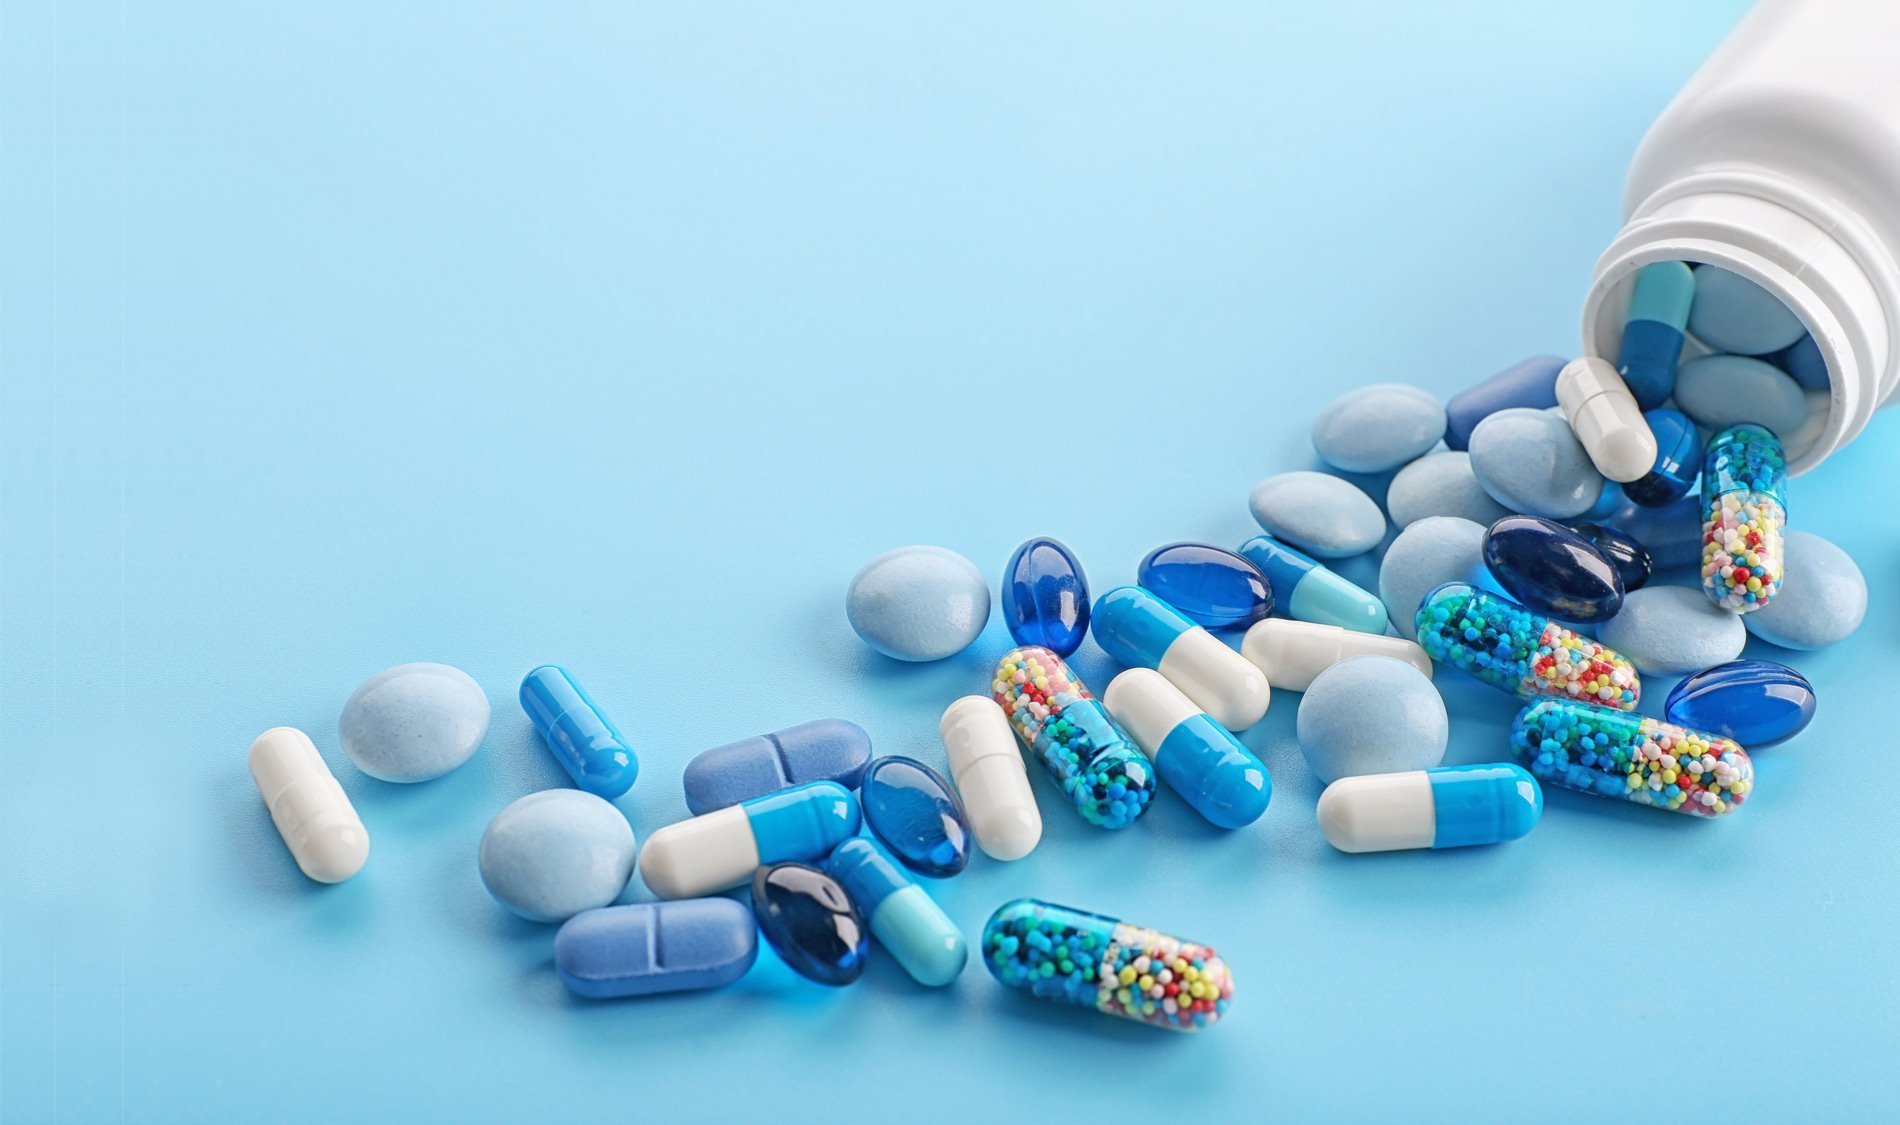 Поисковик Яндекса теперь показывает подробную информацию о лекарствах: цены, аналоги, назначение